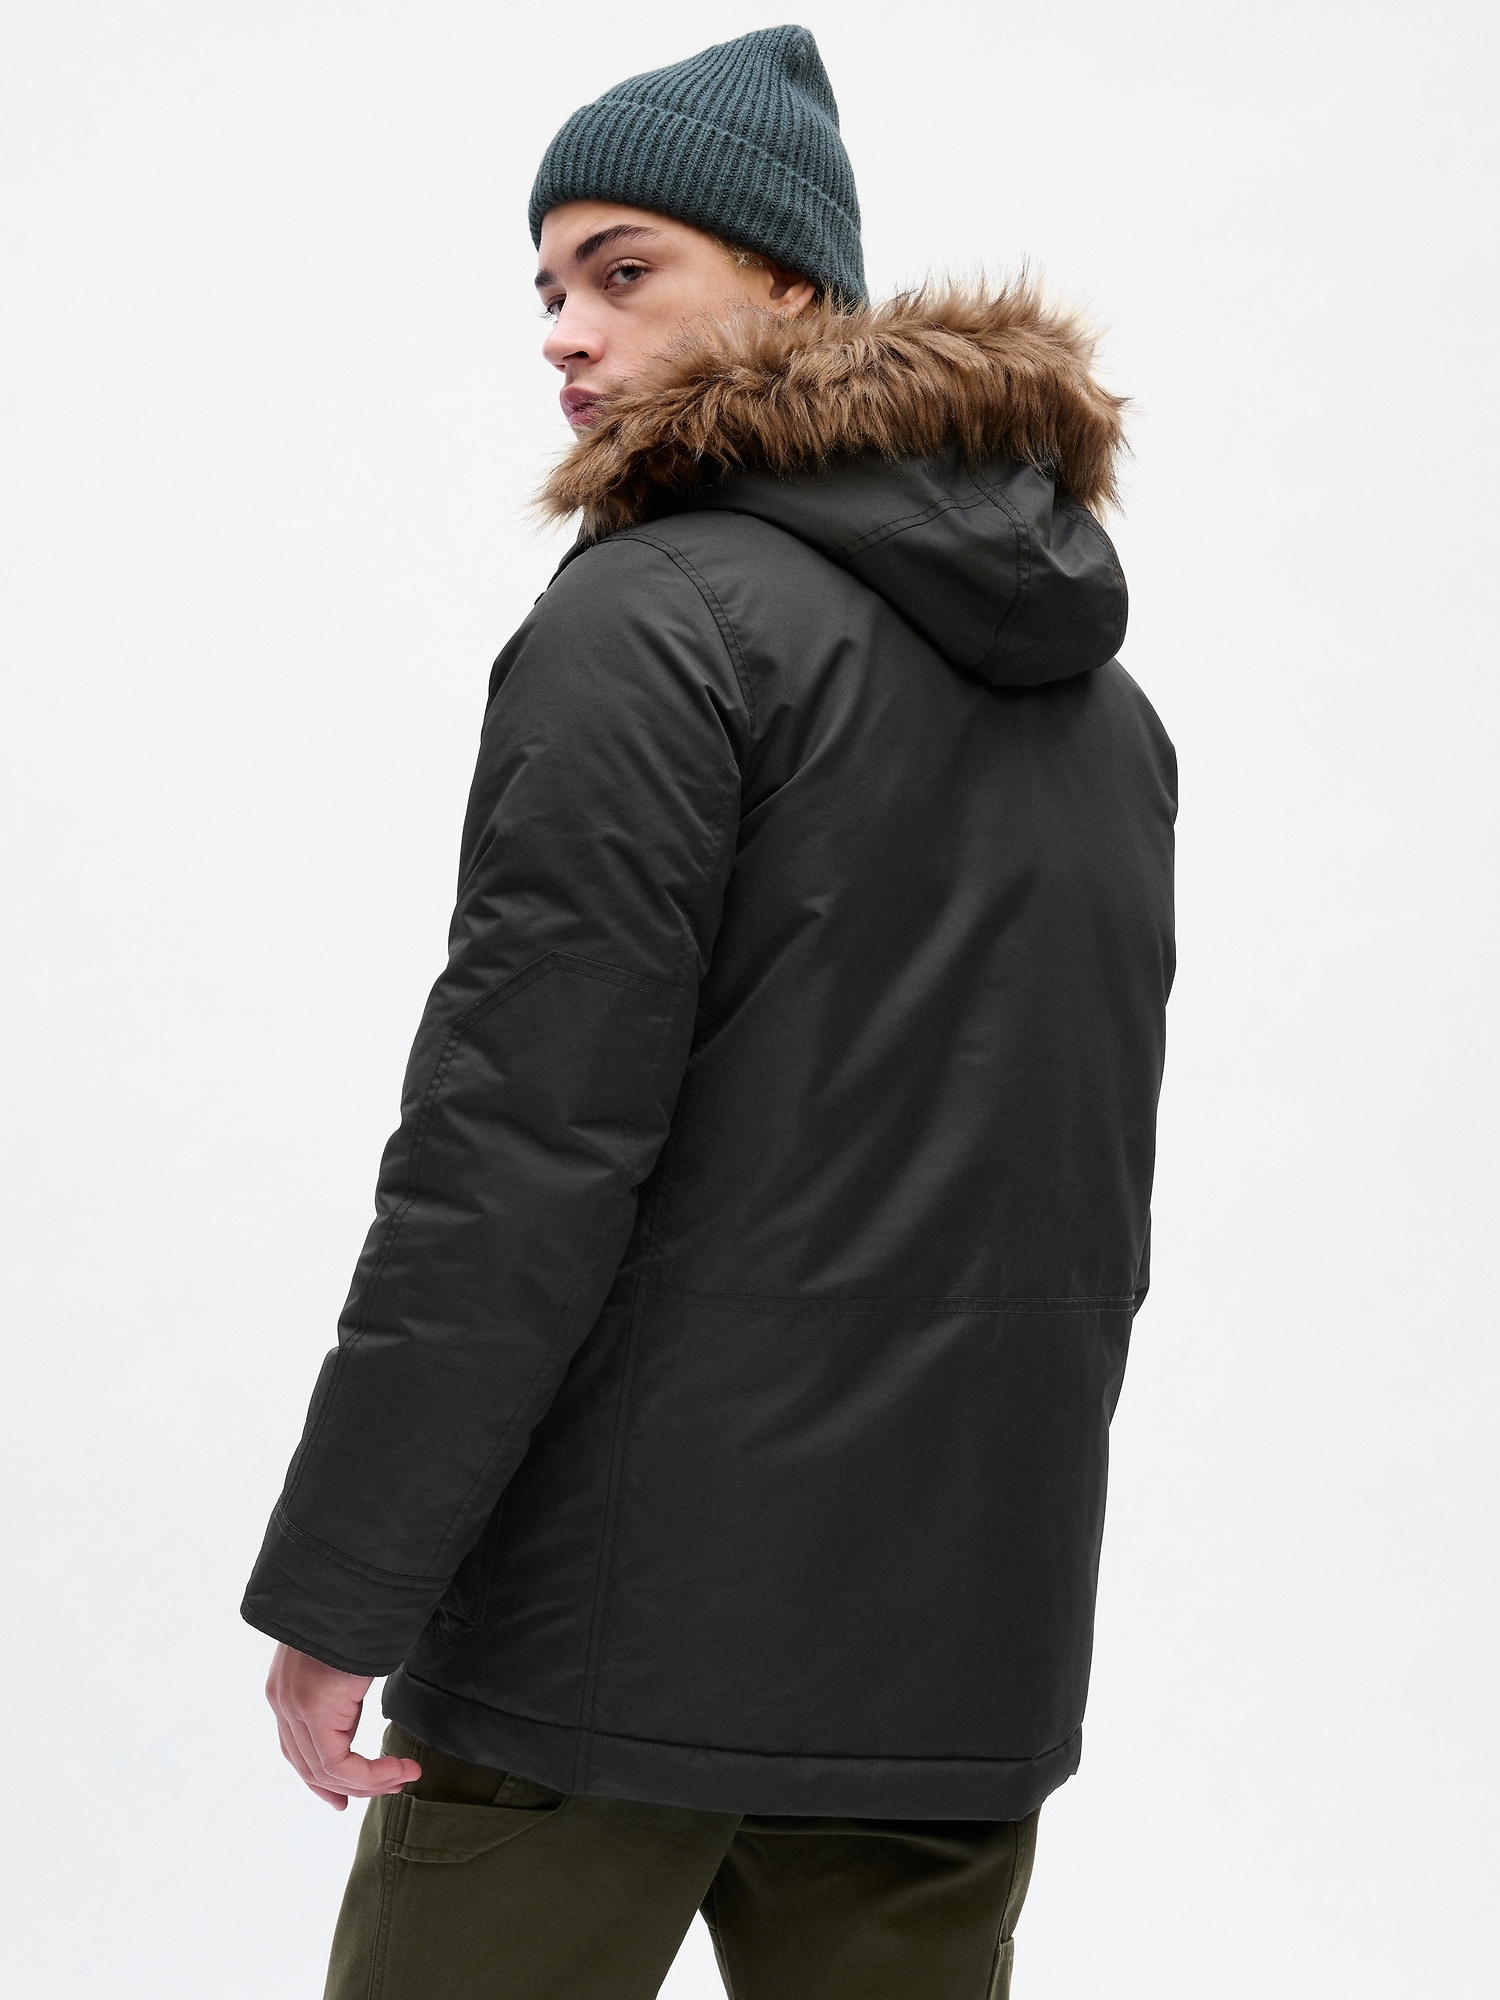 ColdControl Max Snorkel Coat | Gap Factory